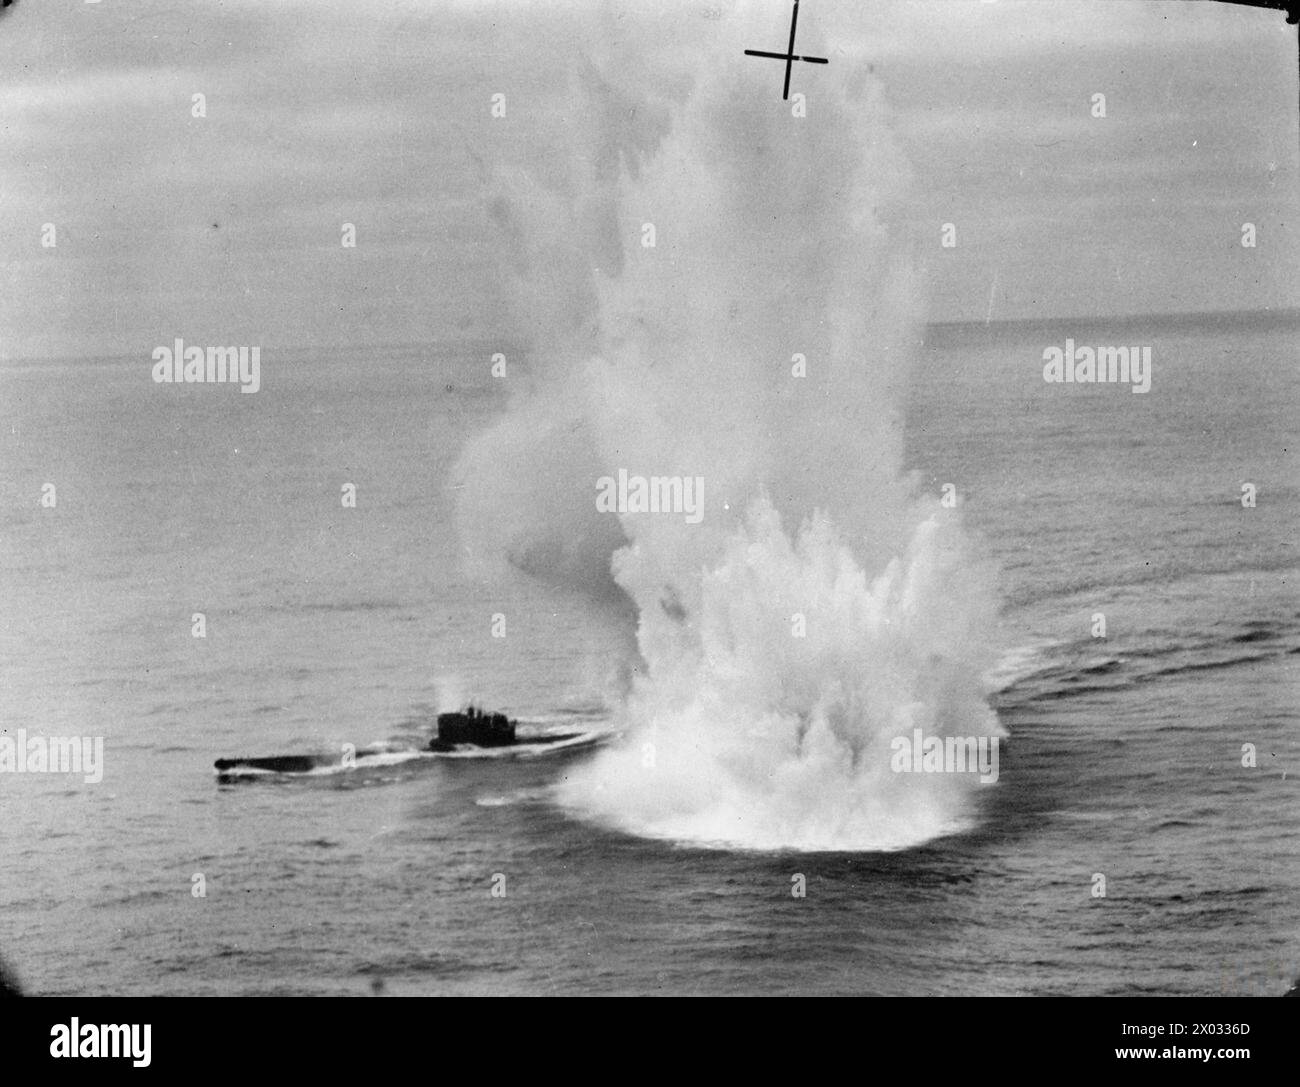 ROYAL AIR FORCE COASTAL COMMAND, 1939-1945. - Photographie oblique à basse altitude prise depuis le Sunderland Mark III, EK591 'U', du No. 422 Squadron RCAF alors qu'il attaquait le sous-marin allemand de type VIIC U-625 dans l'océan Atlantique. Des charges de profondeur larguées par l'EK591 explosent autour de la poupe de l'U-boot (à droite), tandis que des tirs de mitrailleuses provenant du mitrailleur arrière du Sunderland chevauchent les arcs et la tour de conning (à gauche). L'U-625 a été submergé peu de temps après, pour refaire surface trois minutes plus tard dans un état endommagé de l'Aviation royale du Canada, 422e Escadron de la Marine allemande (troisième Reich), U-625 Banque D'Images